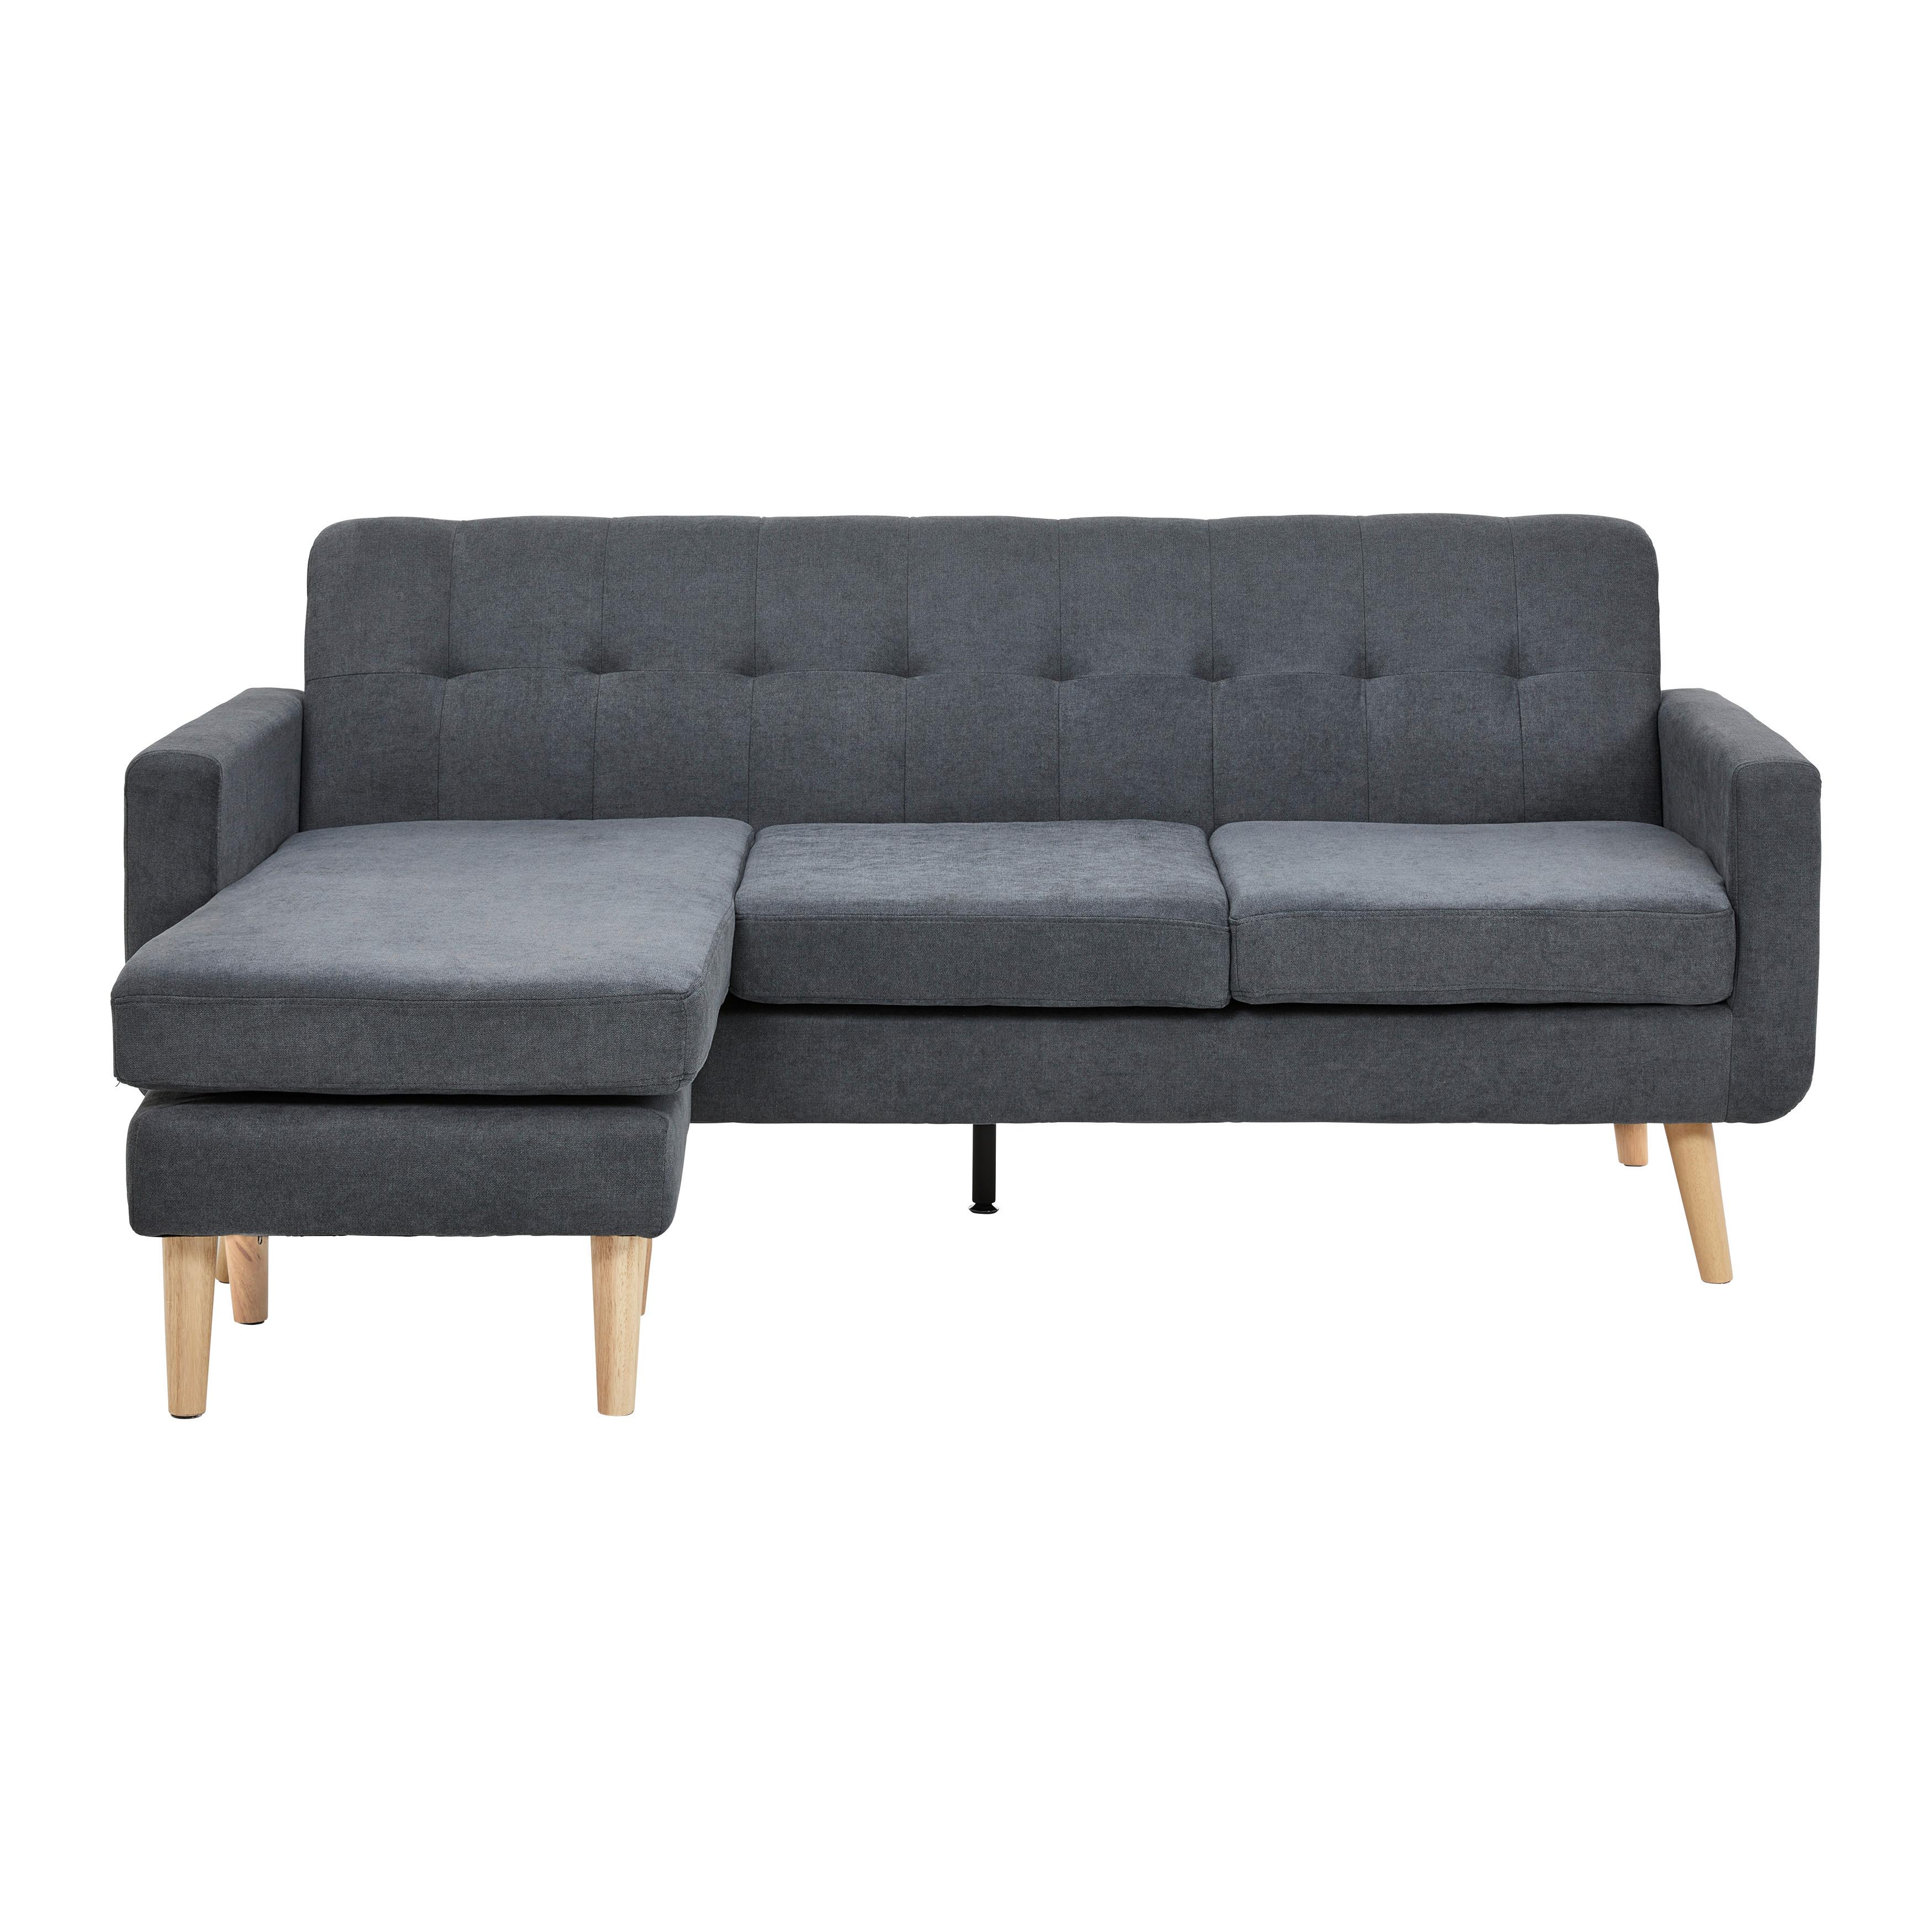 Sedežna Garnitura Tamara, Oblika L - temno siva/naravne barve, Moderno, tekstil/les (198/83/143cm) - Bessagi Home